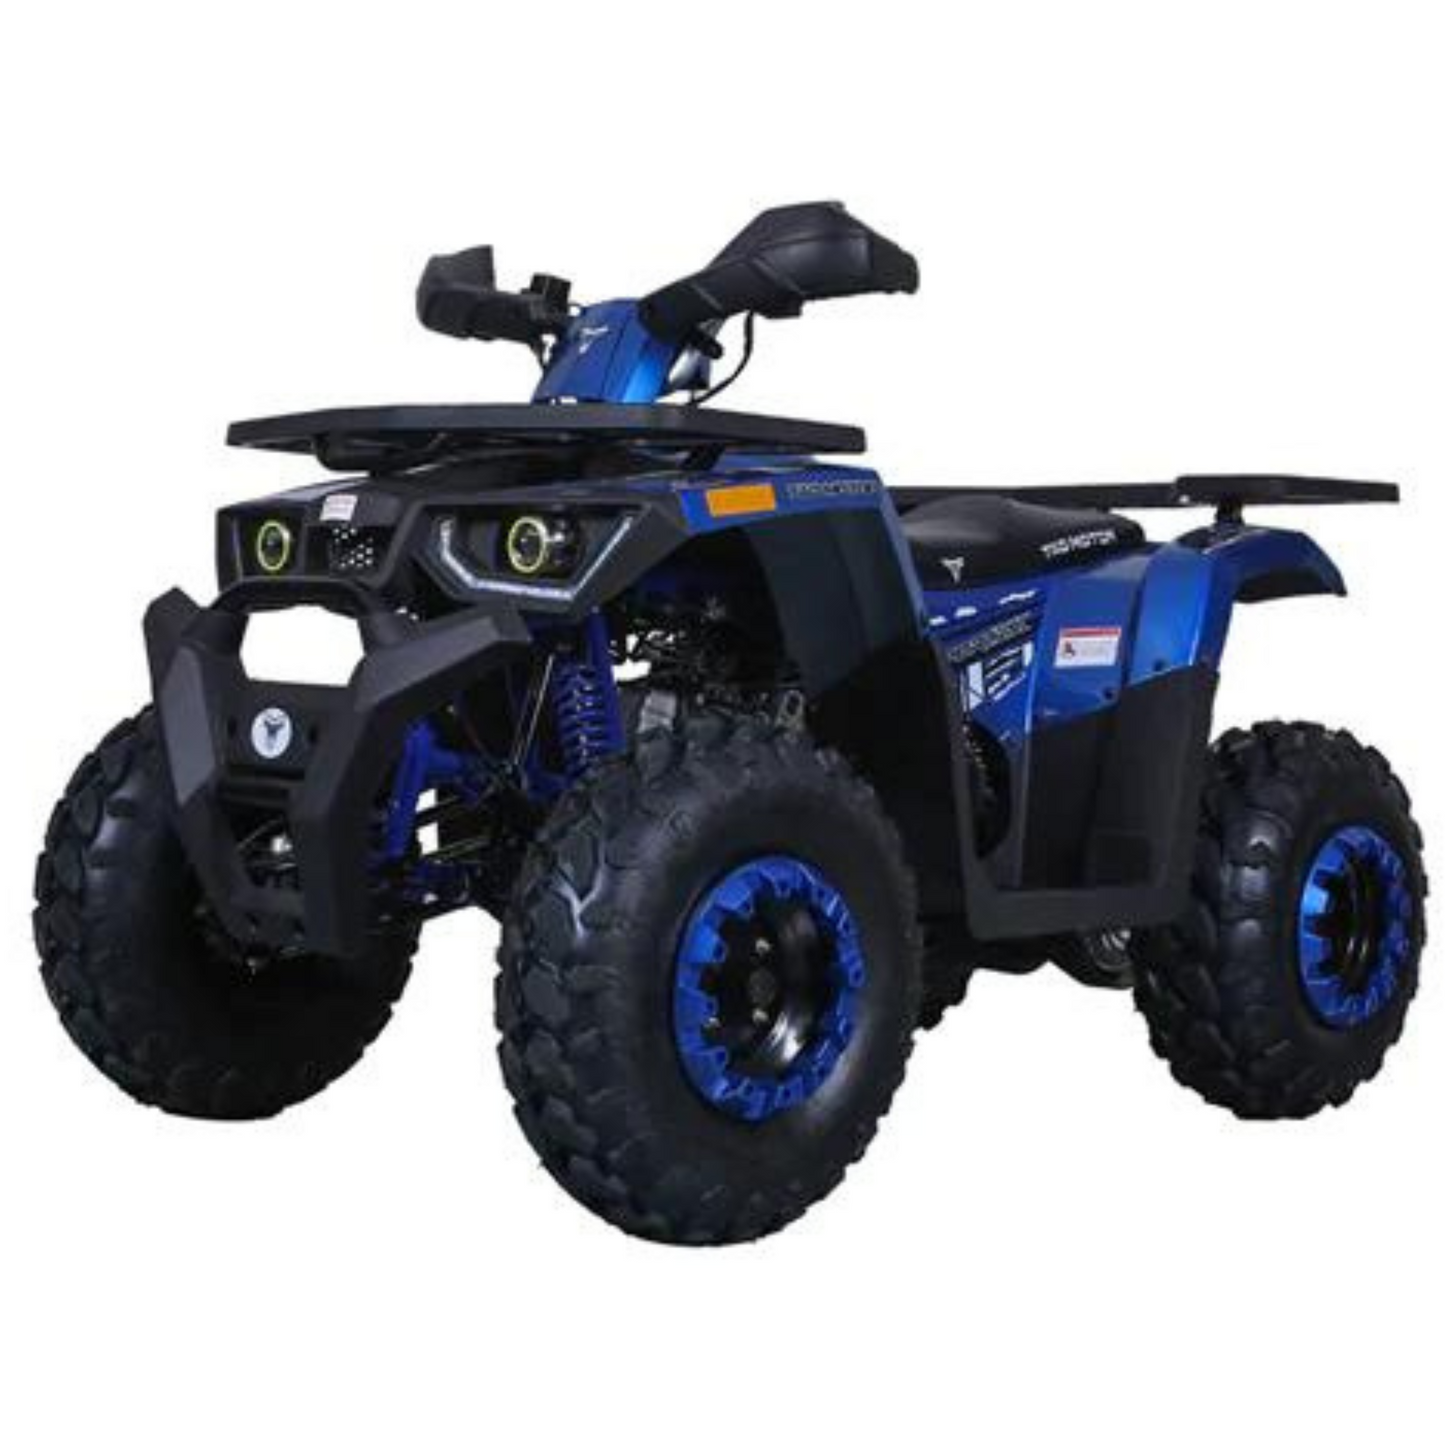 Tao Raptor 200 ATV